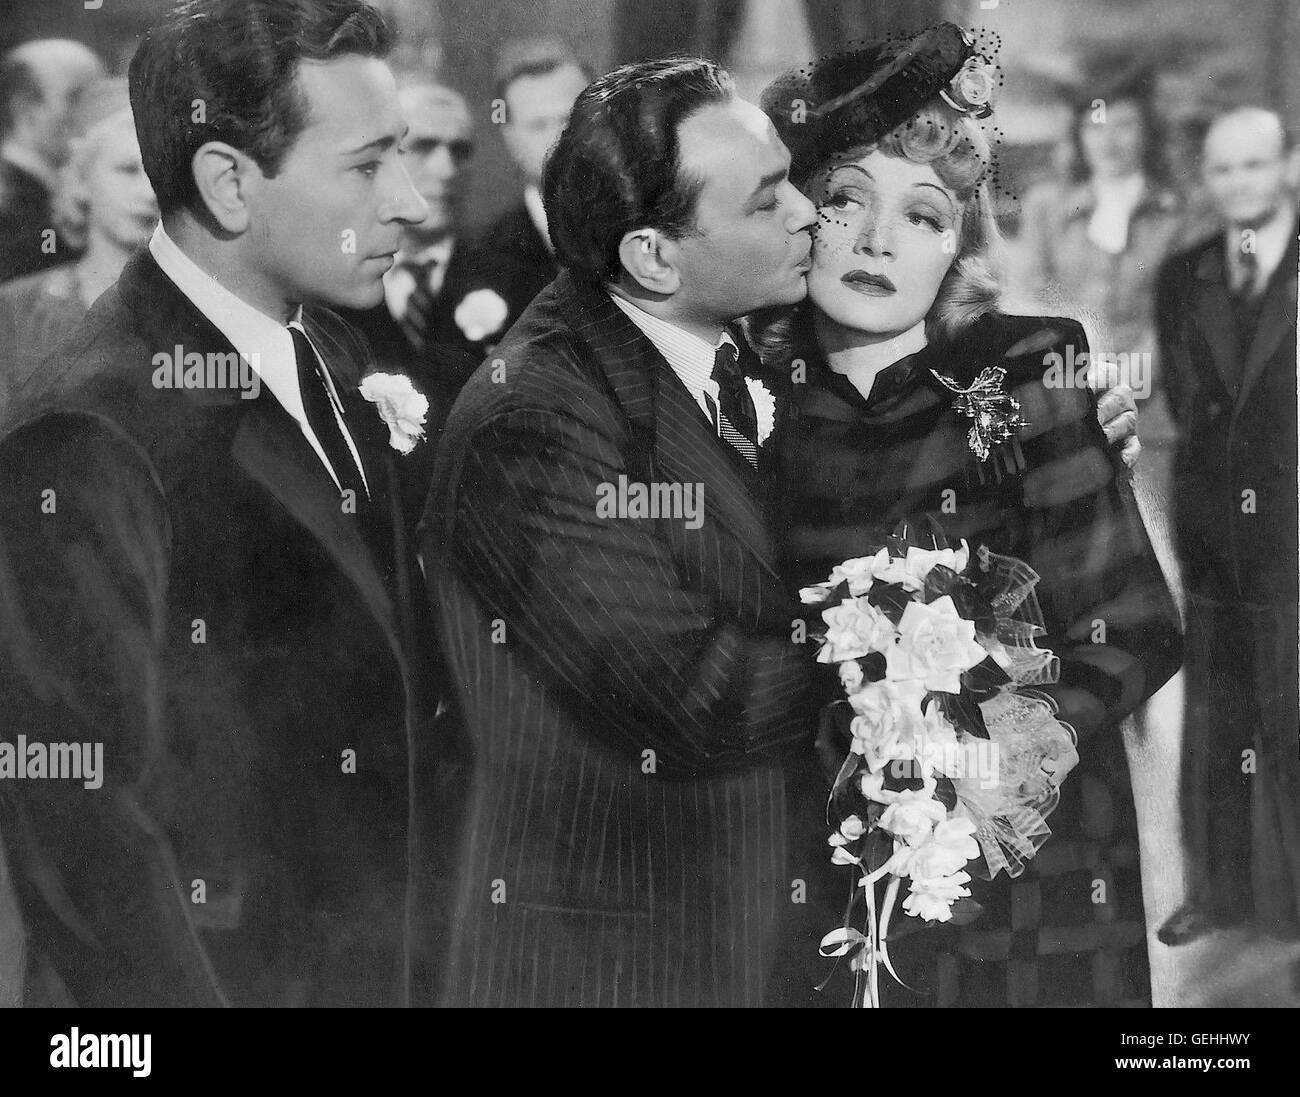 George Raft, Edward G. Robinson, Marlene Dietrich *** Local Caption *** 1941, Manpower, Herzen In Flammen Stock Photo